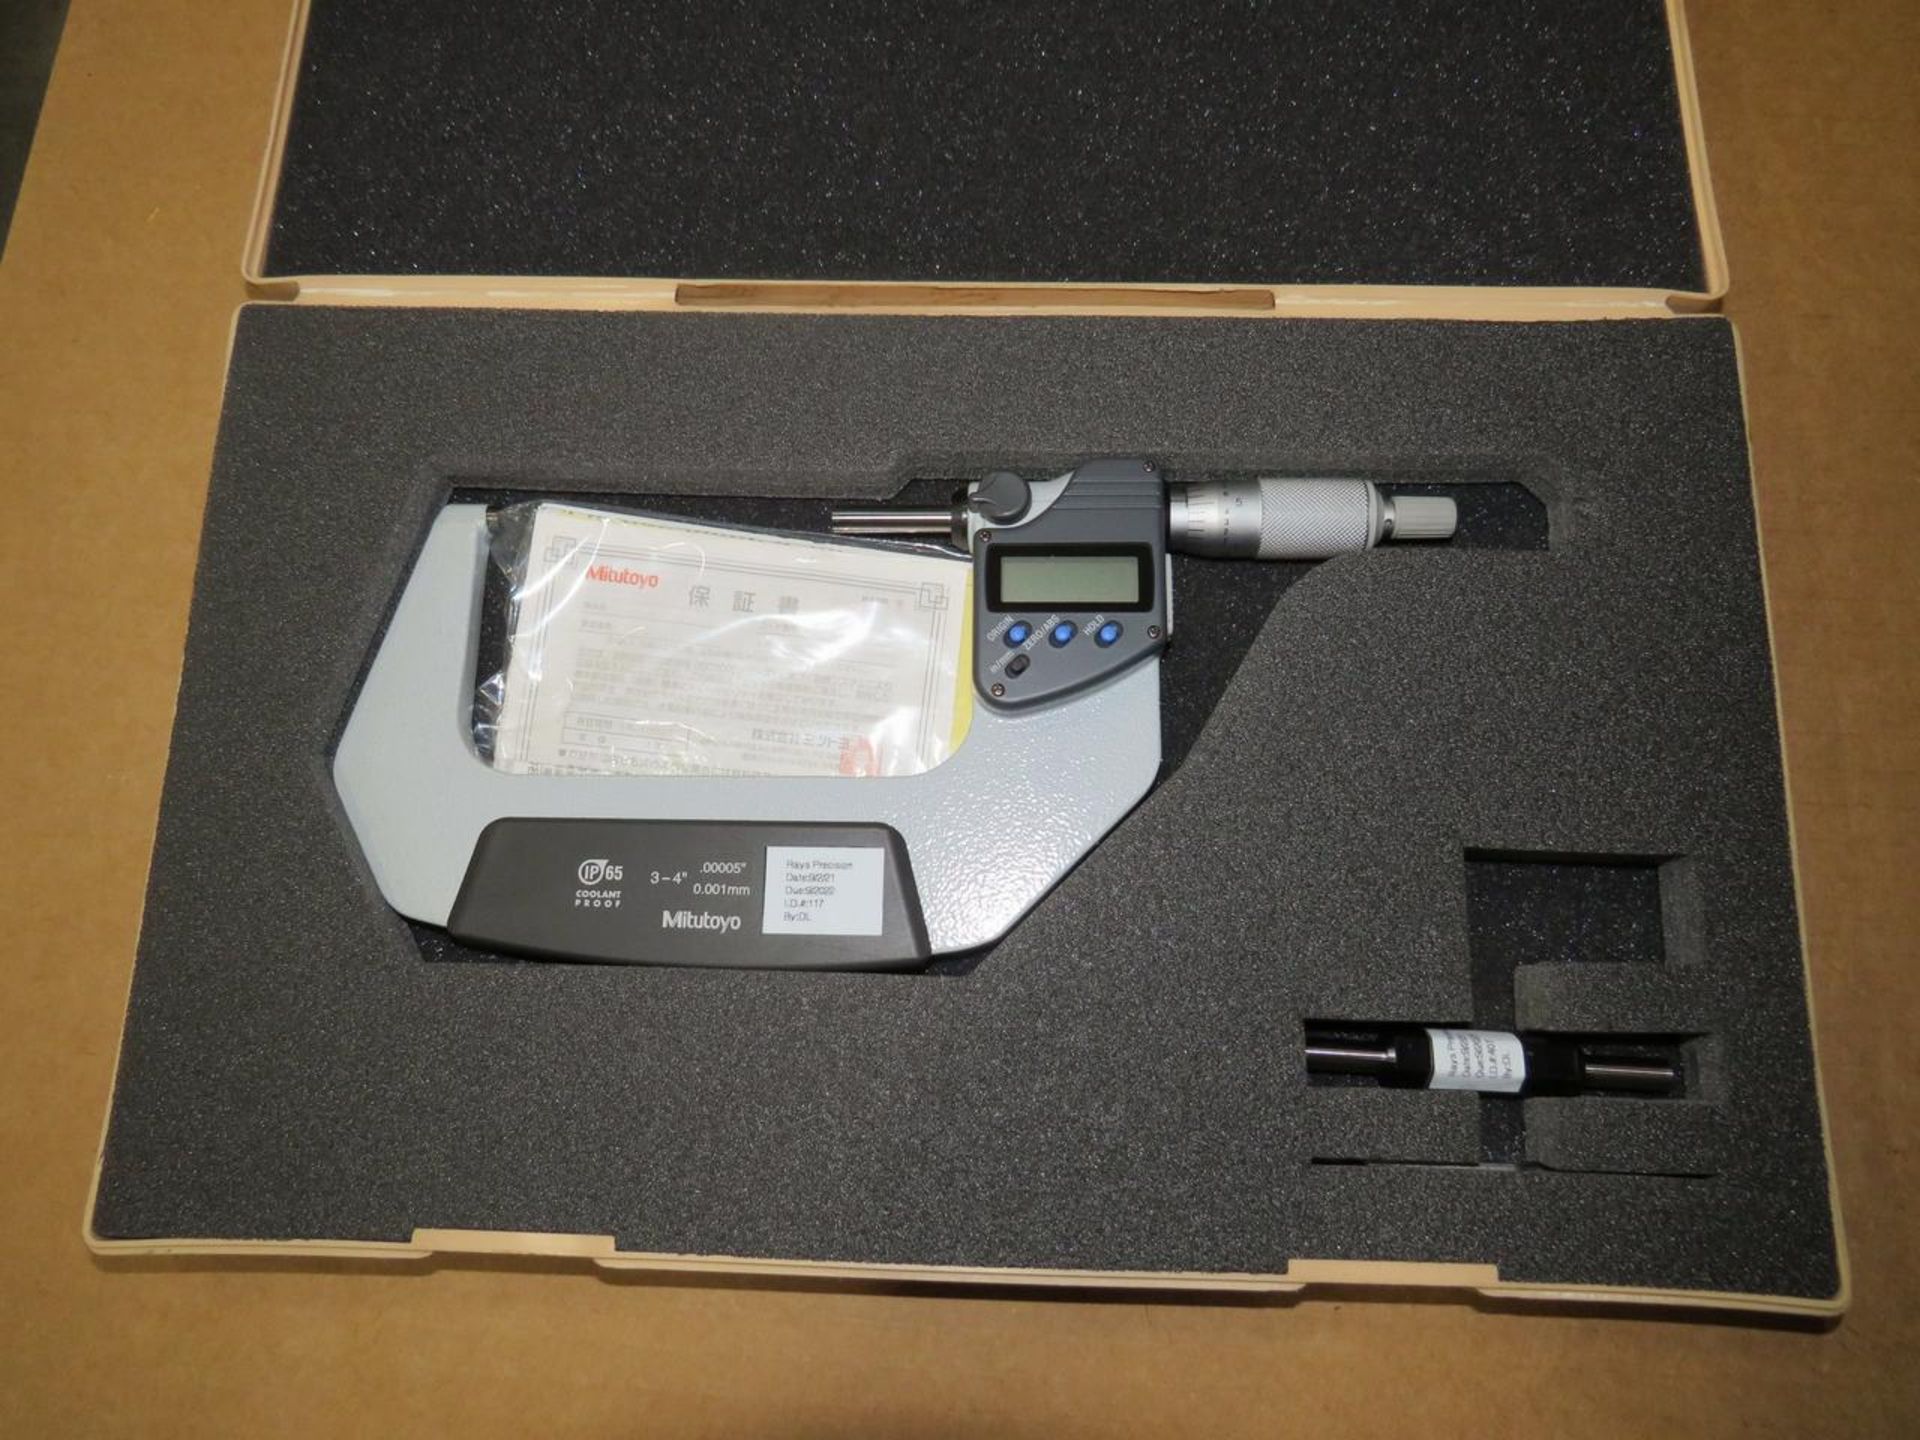 Mitutoyo 293-333 3-4" Digital Micrometer